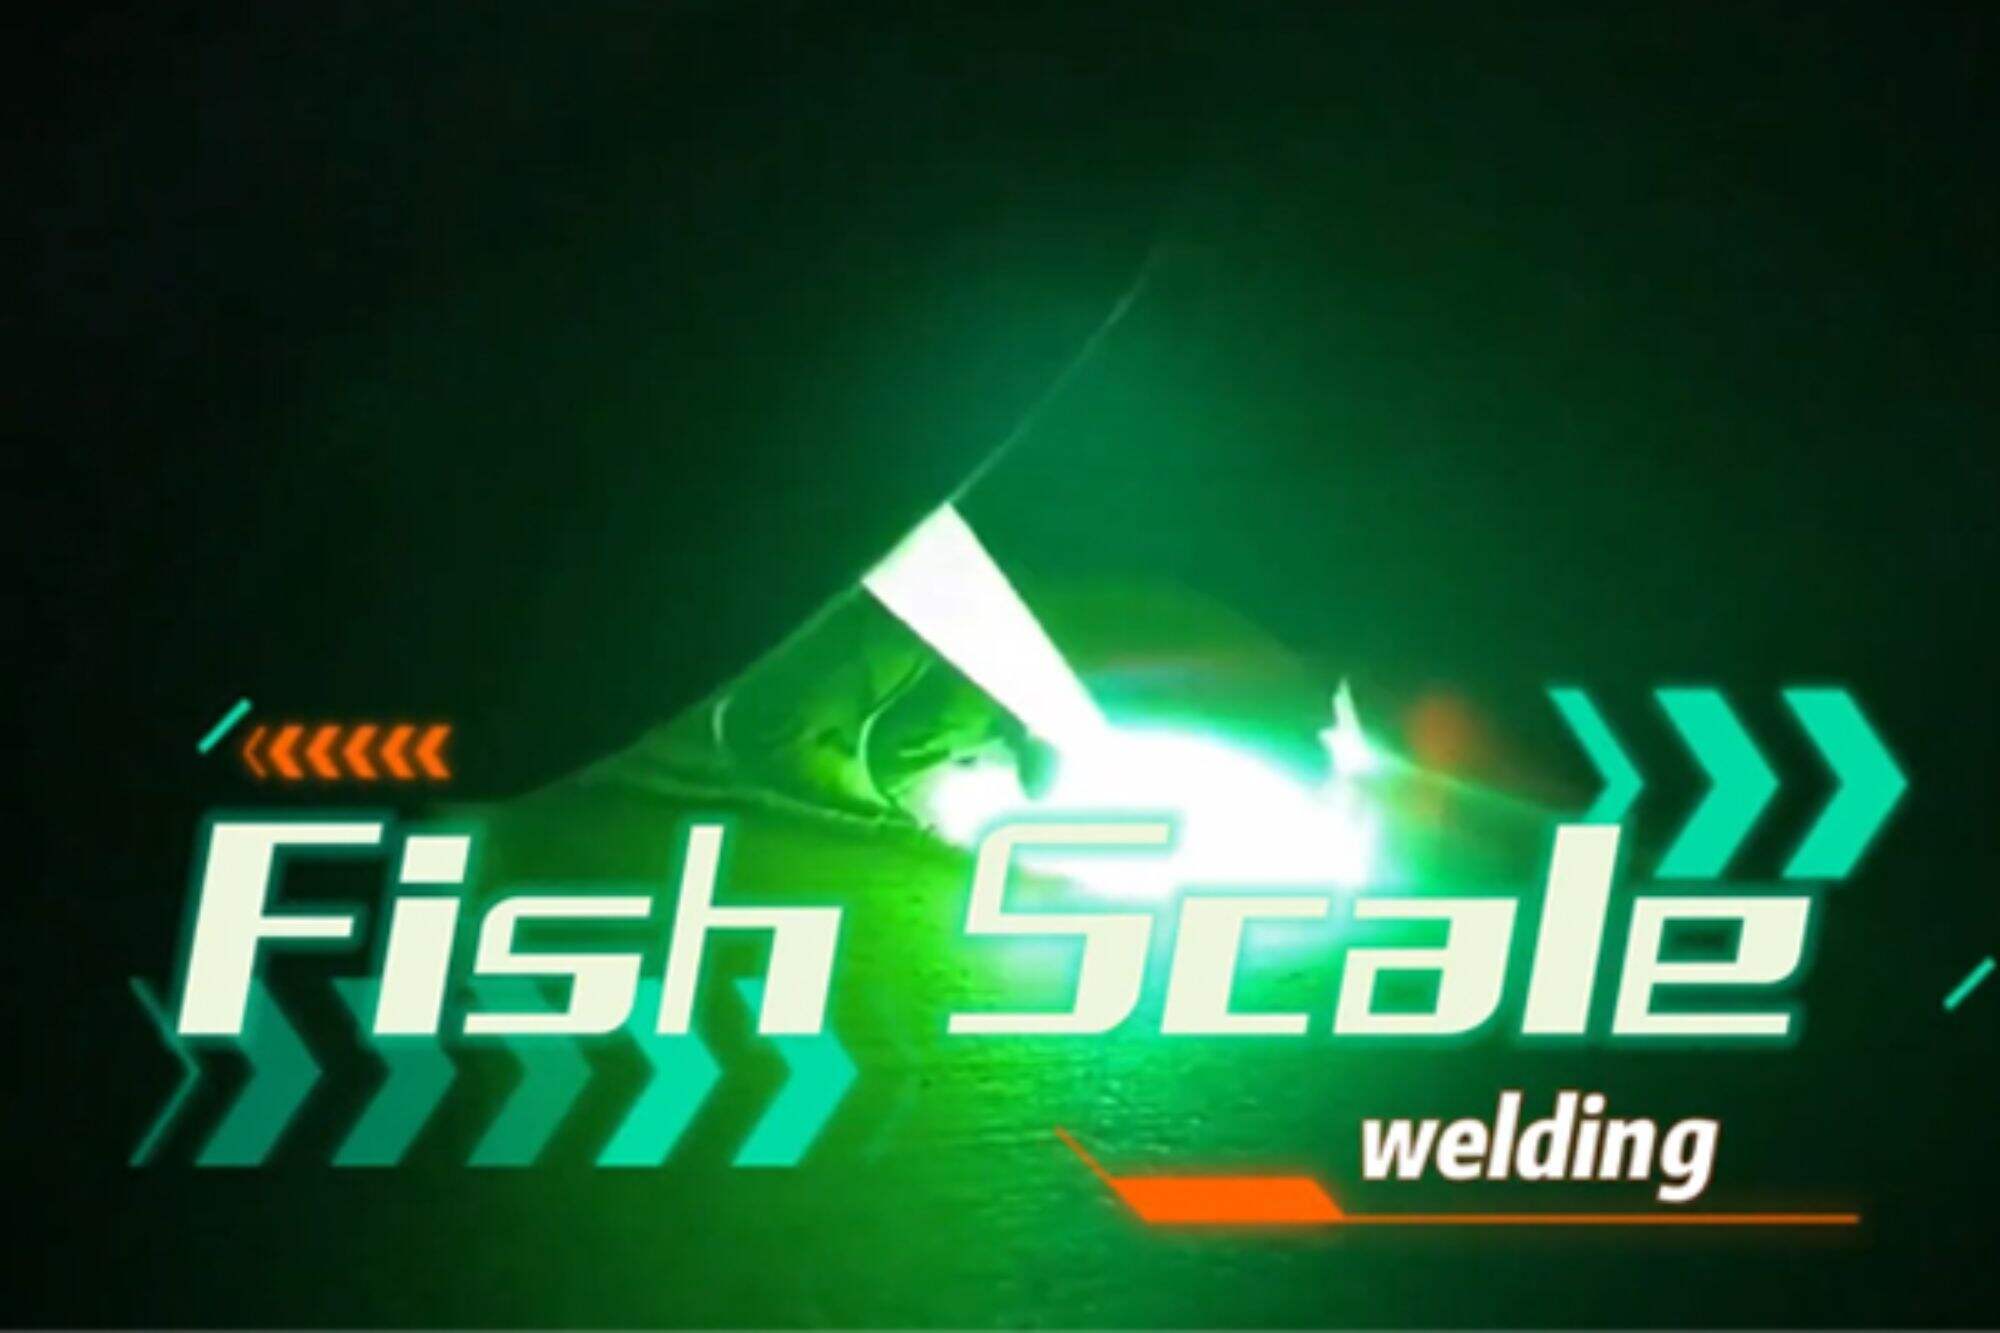 Ручний лазерний зварювальний апарат демонструє ефект зварювання риб'ячої луски і простий в експлуатації